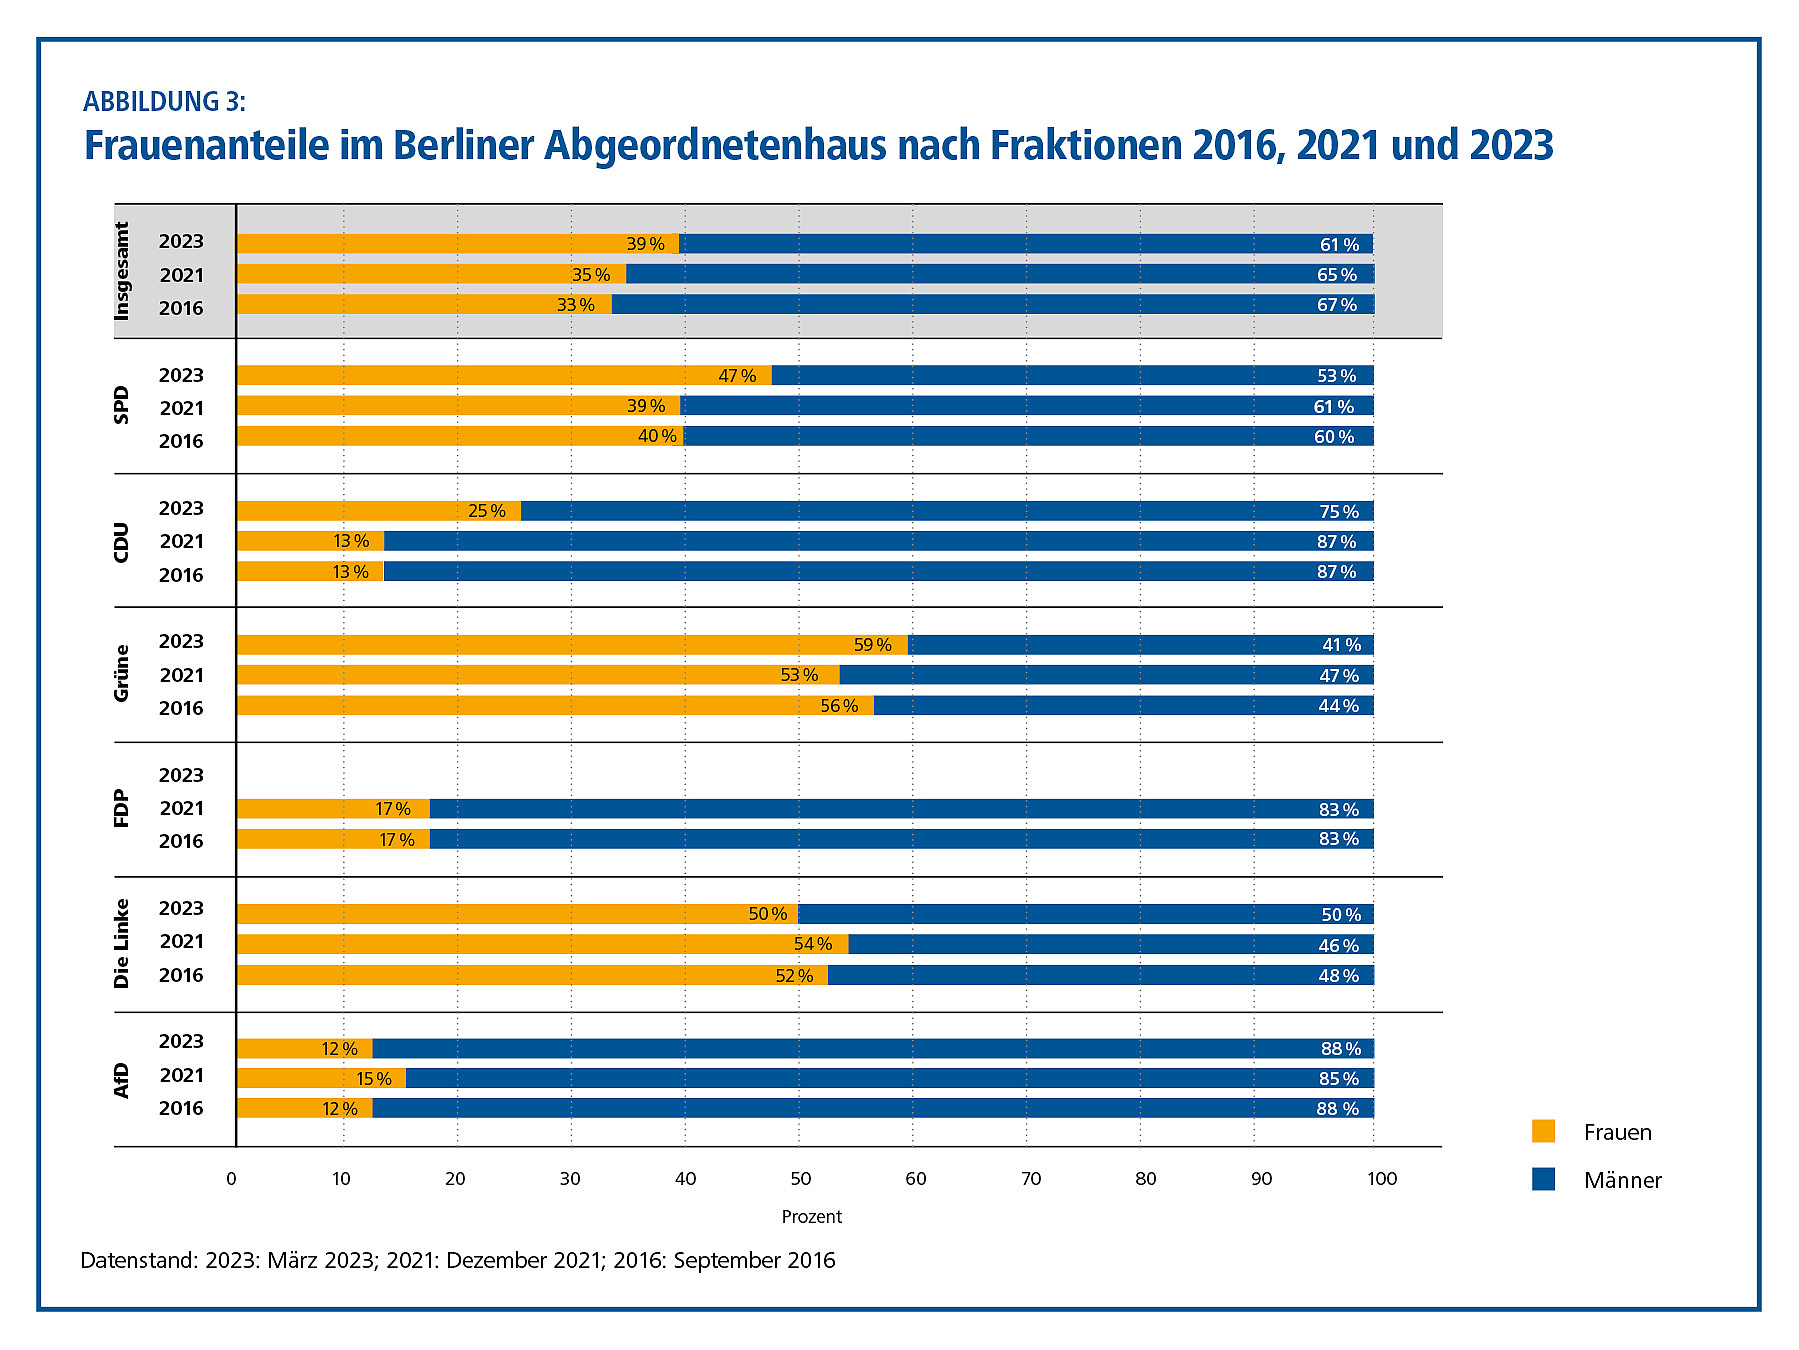 Frauenanteile im Berliner Abgeordnetenhaus nach Fraktionen 2016, 2021 und 2023